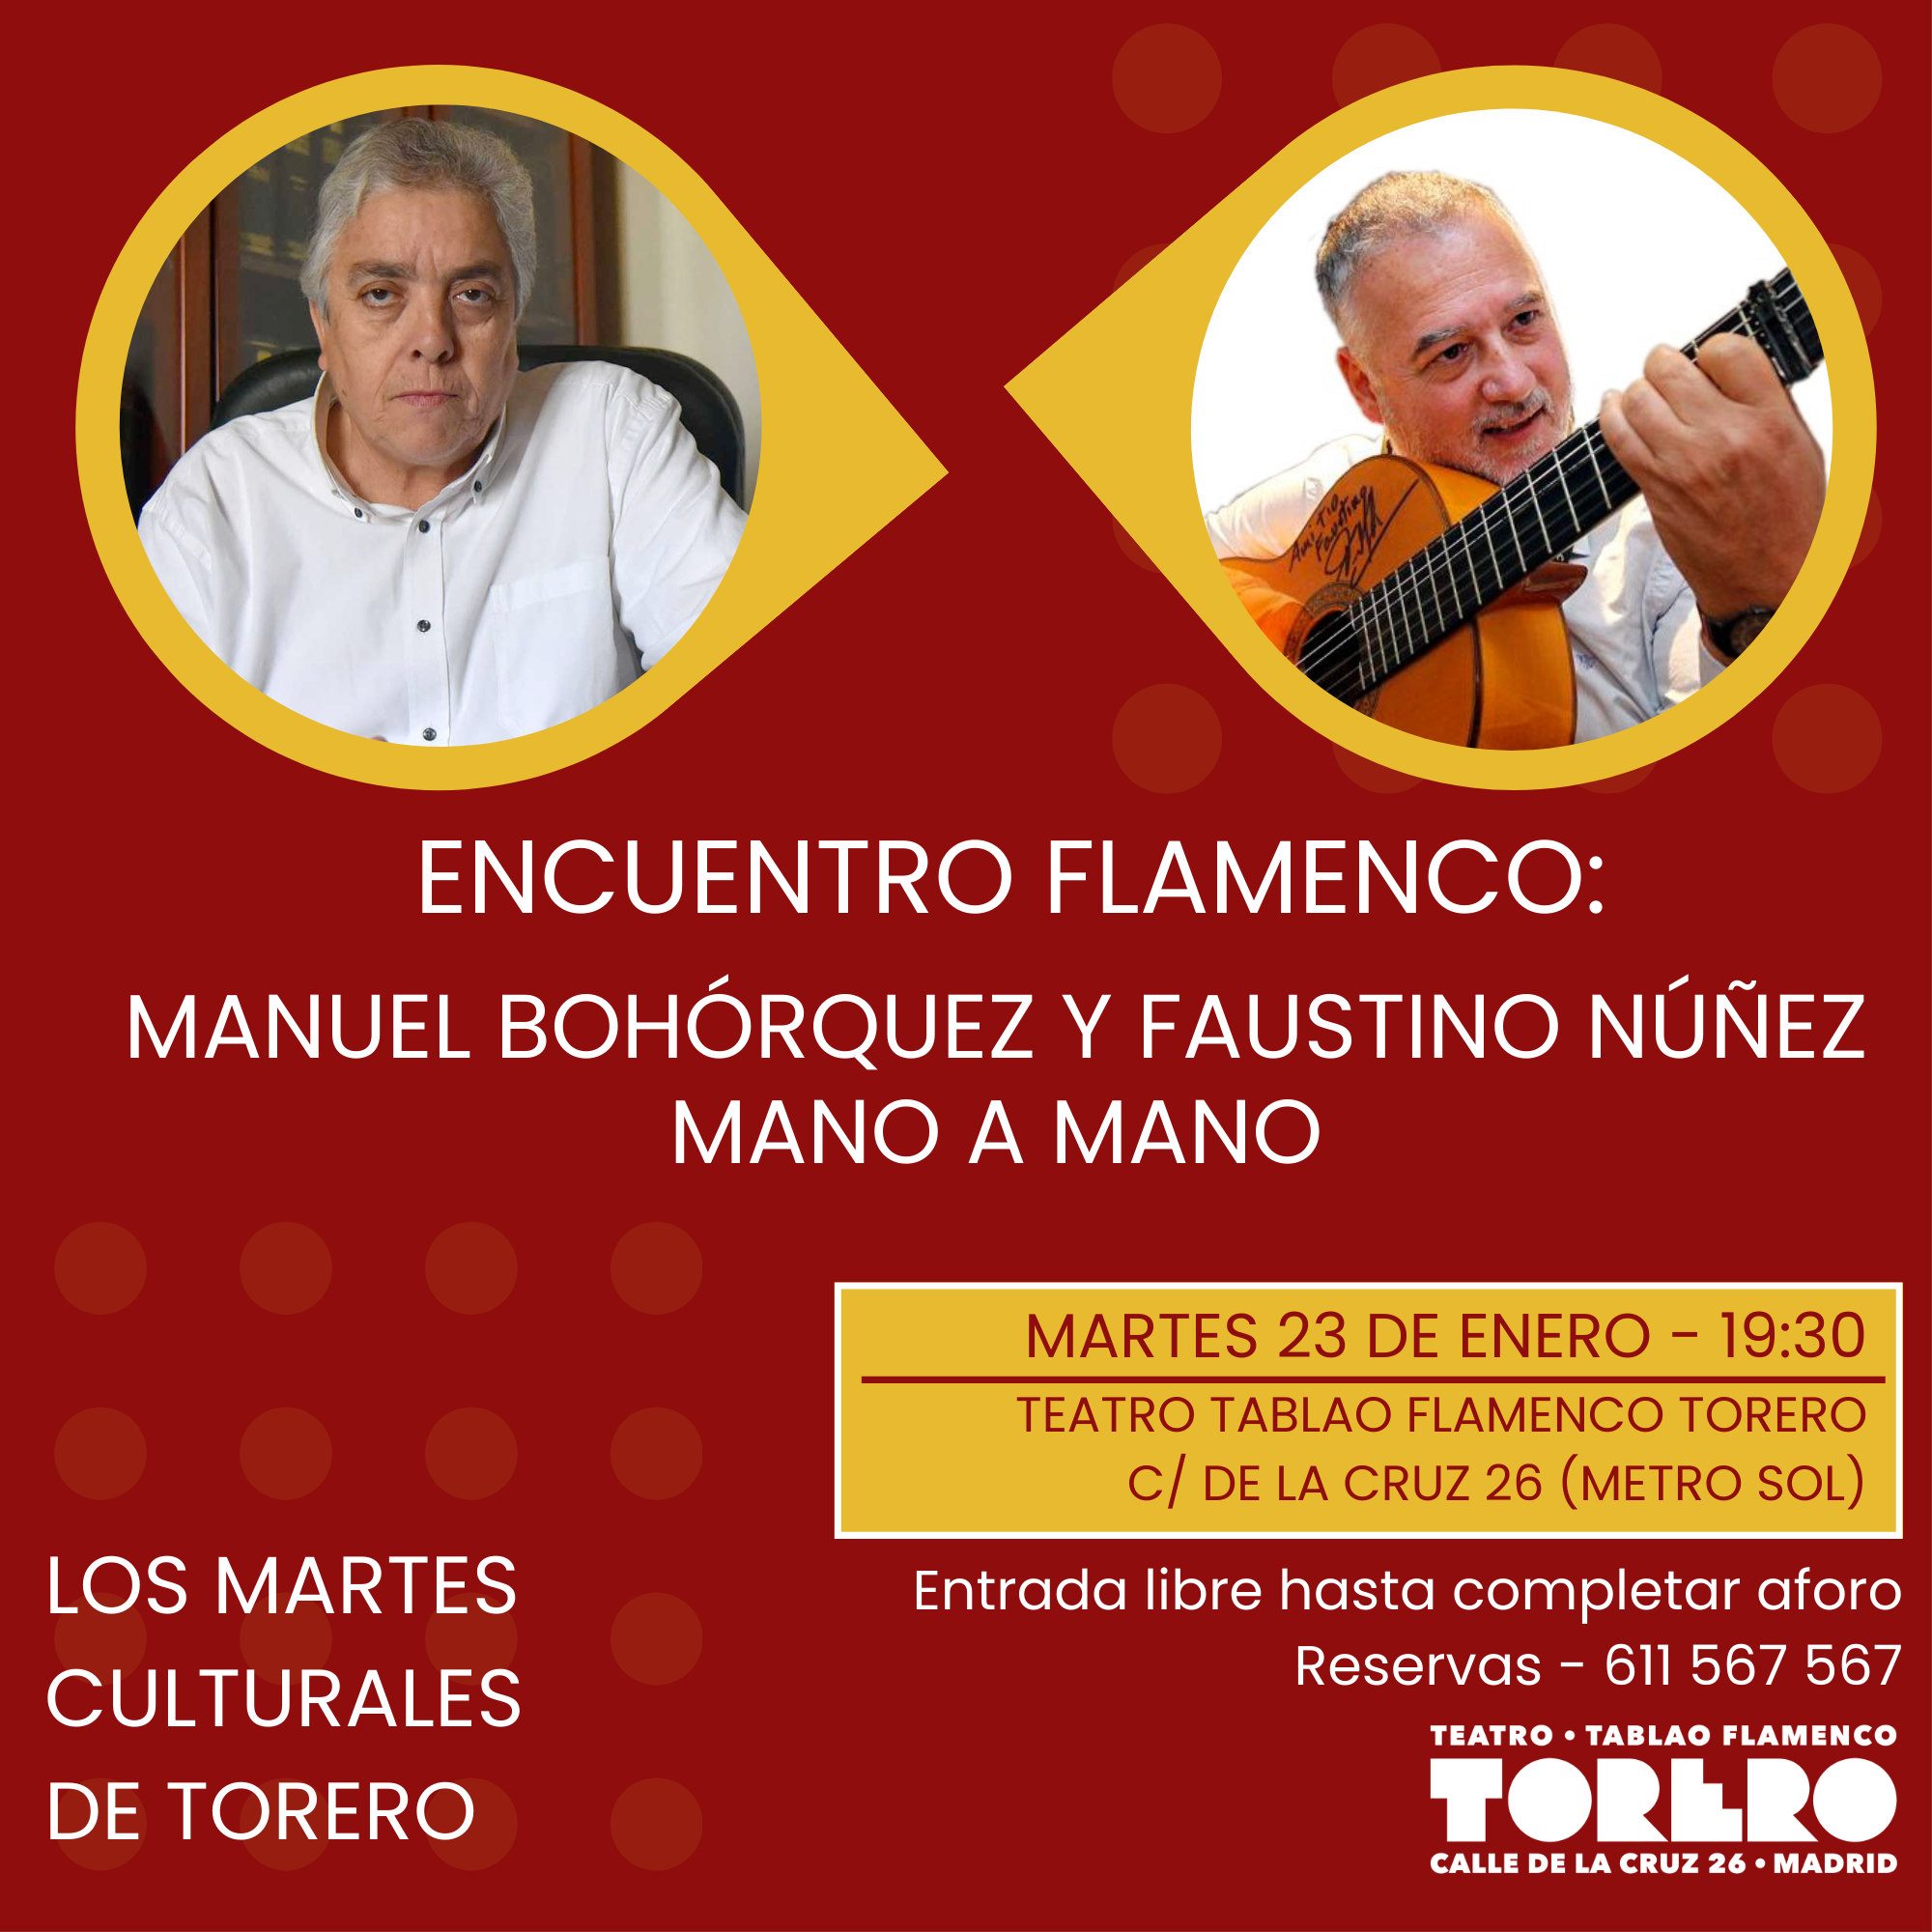 El saber ocupa su lugar en los Martes Culturales de Torero con Manuel Bohórquez y Faustino Núñez